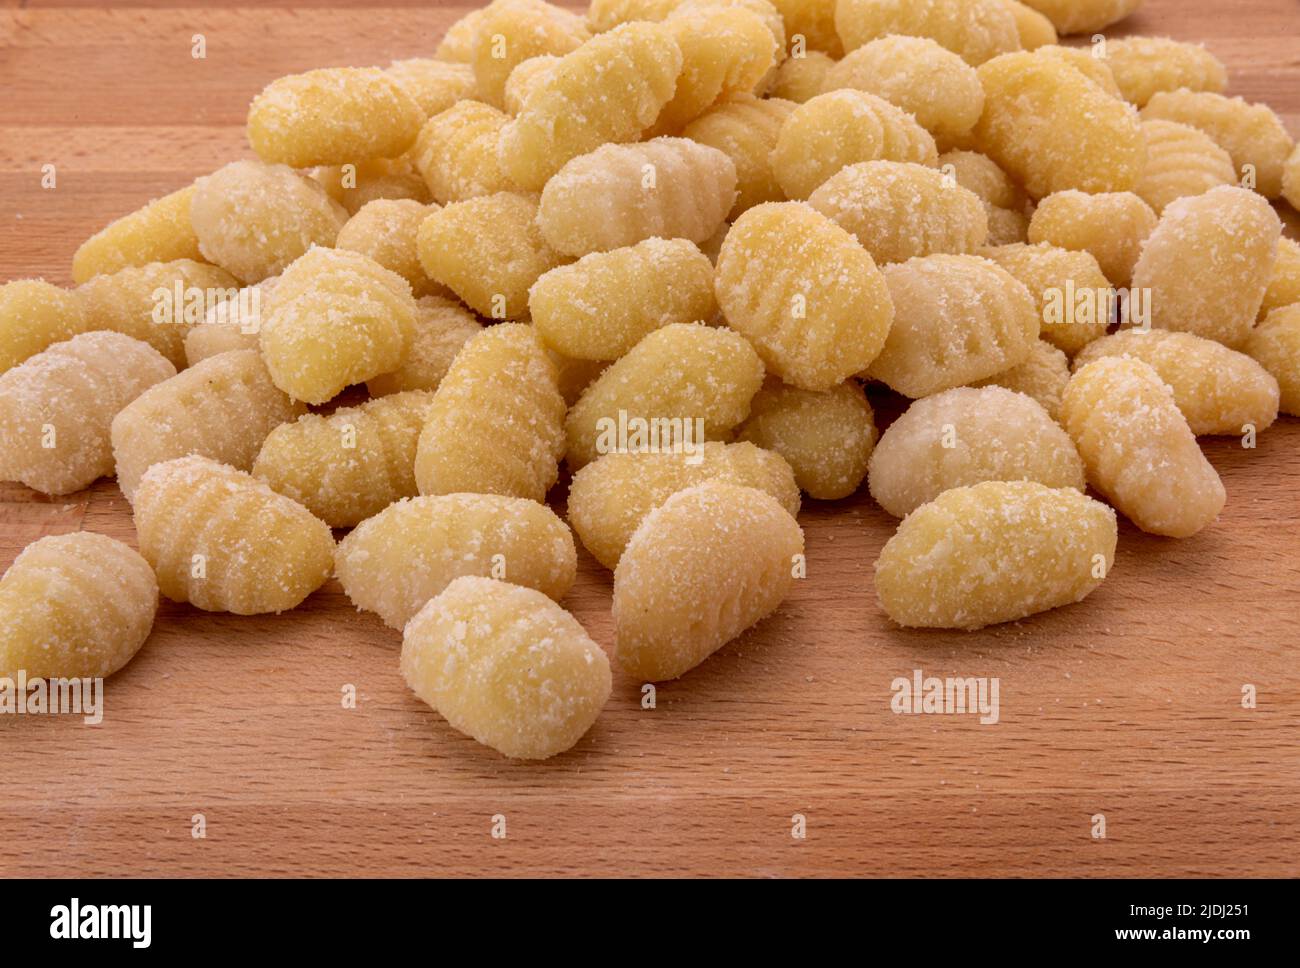 Gnocchi di patate crudi su tavola di legno, pasta italiana a base di farina e patate. Gnocchi non cotti Foto Stock